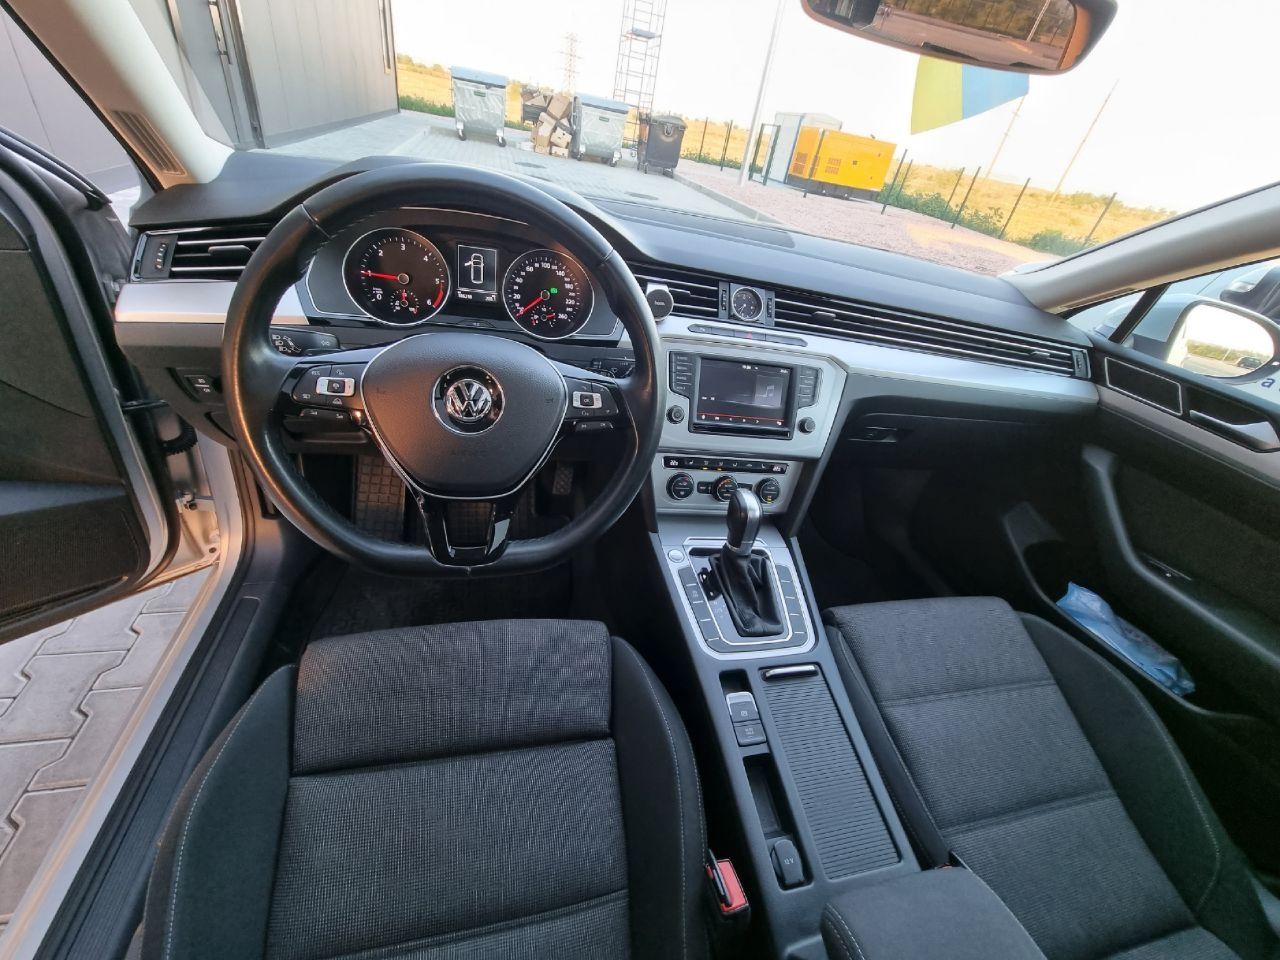 Volkswagen Passat b8